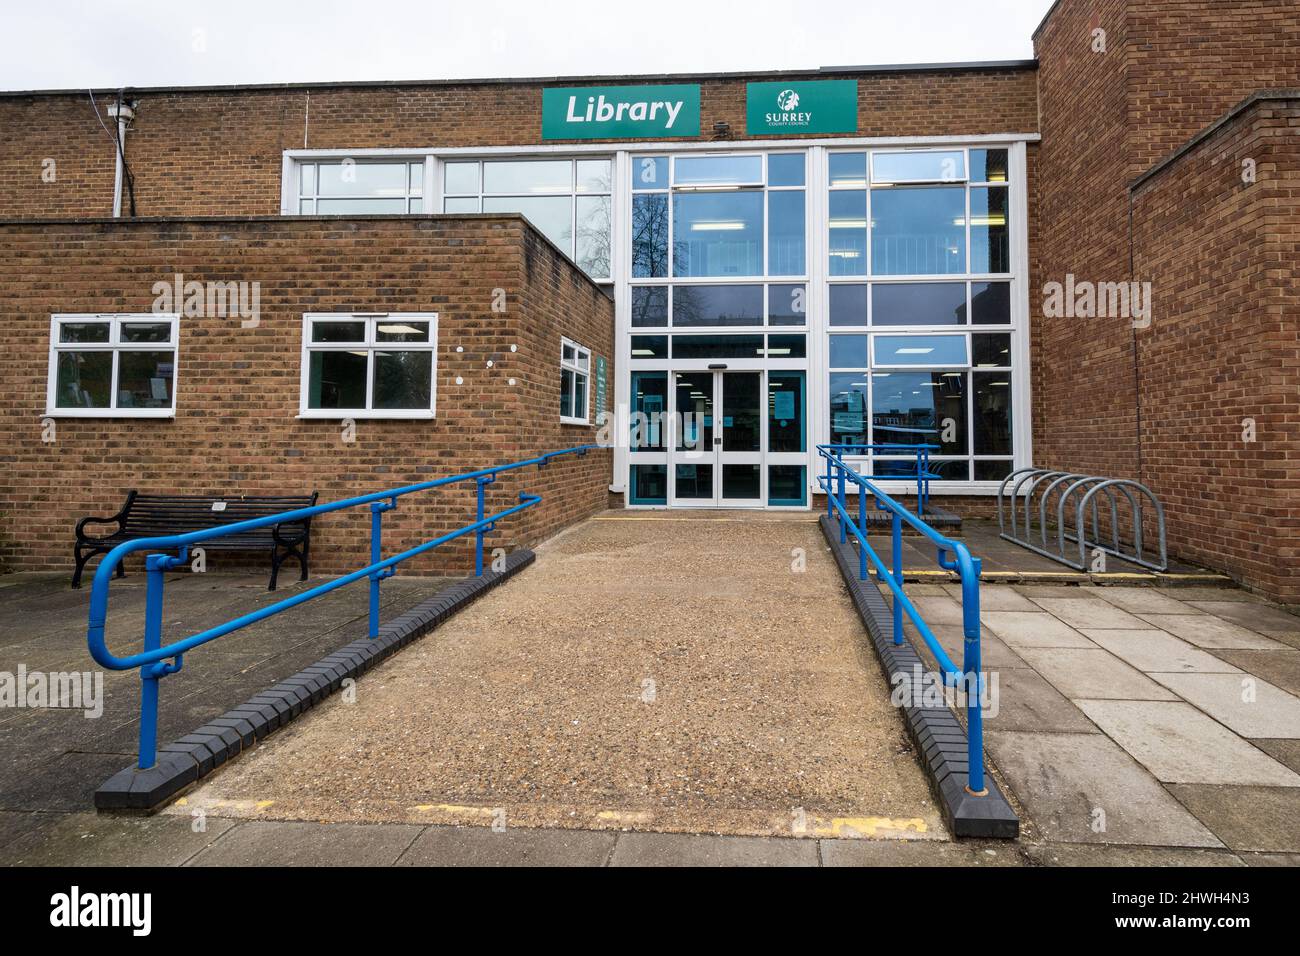 Entrée de la bibliothèque Camberley, Surrey, Angleterre, Royaume-Uni, avec rampe d'accès pour personnes handicapées Banque D'Images